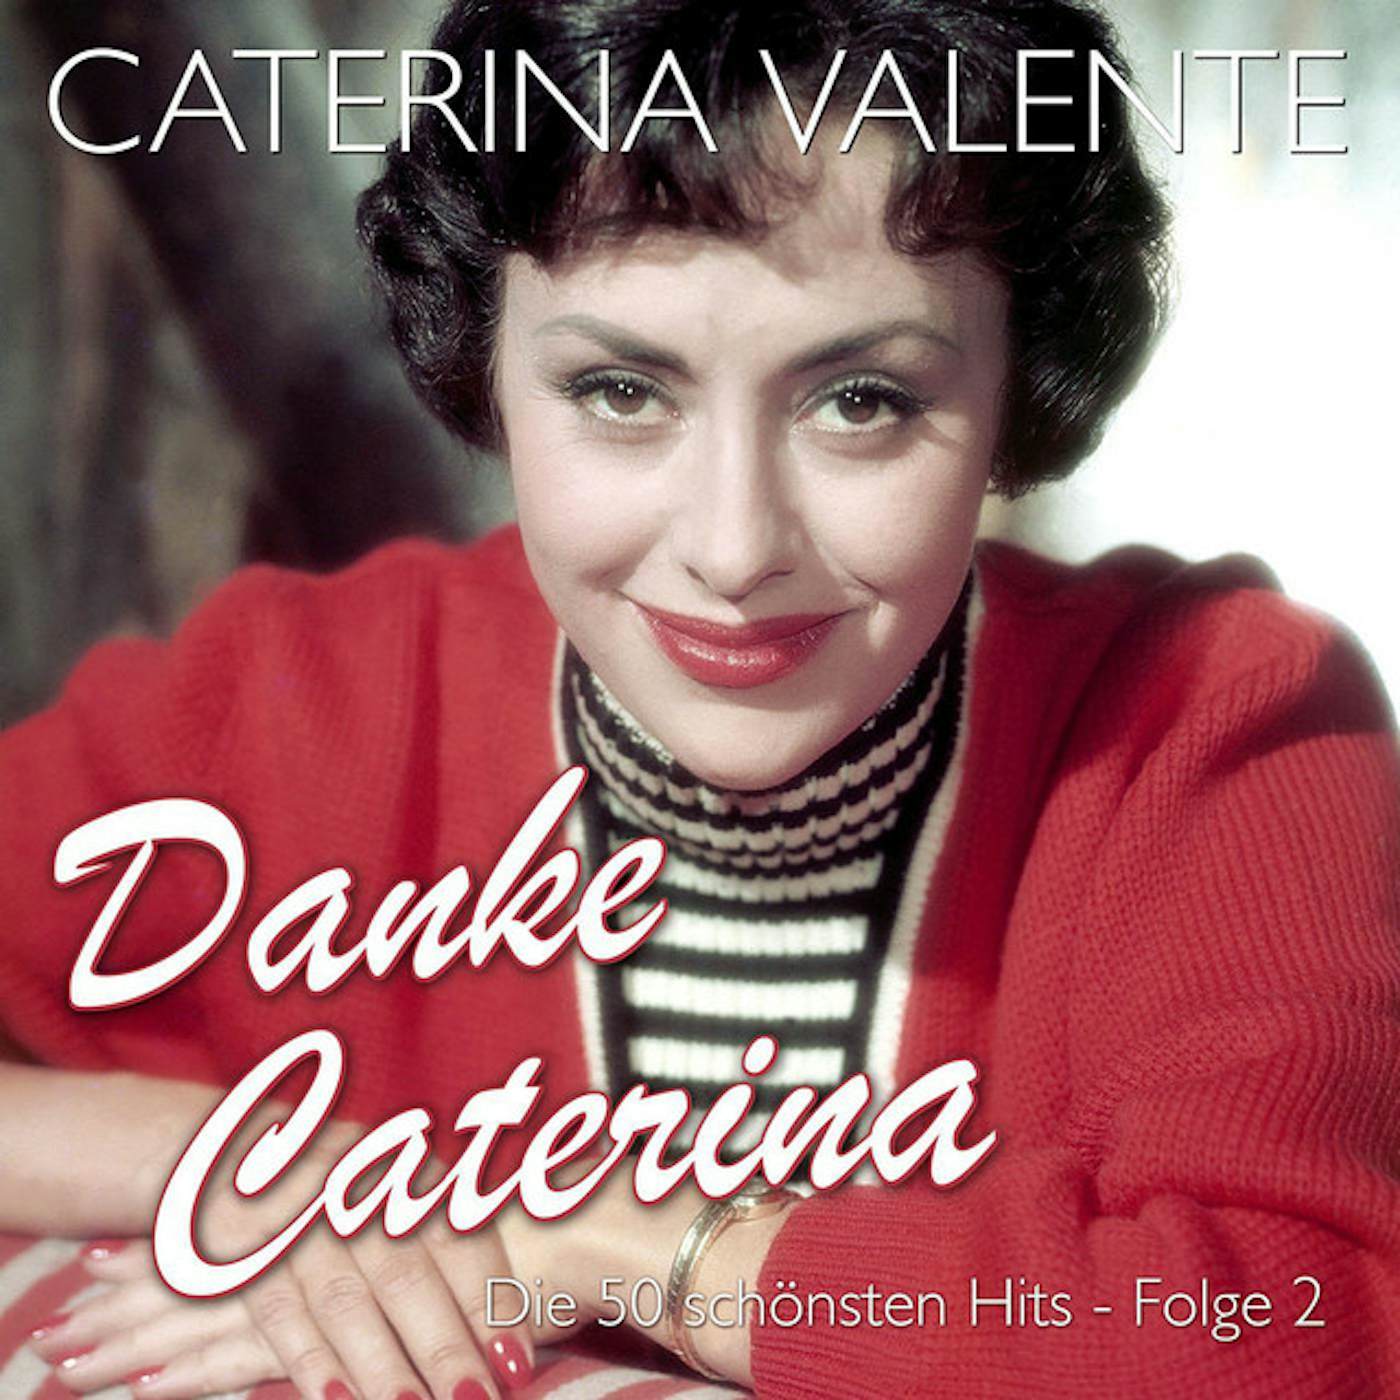 Caterina Valente DANKE CATERINA-DIE 50 CD